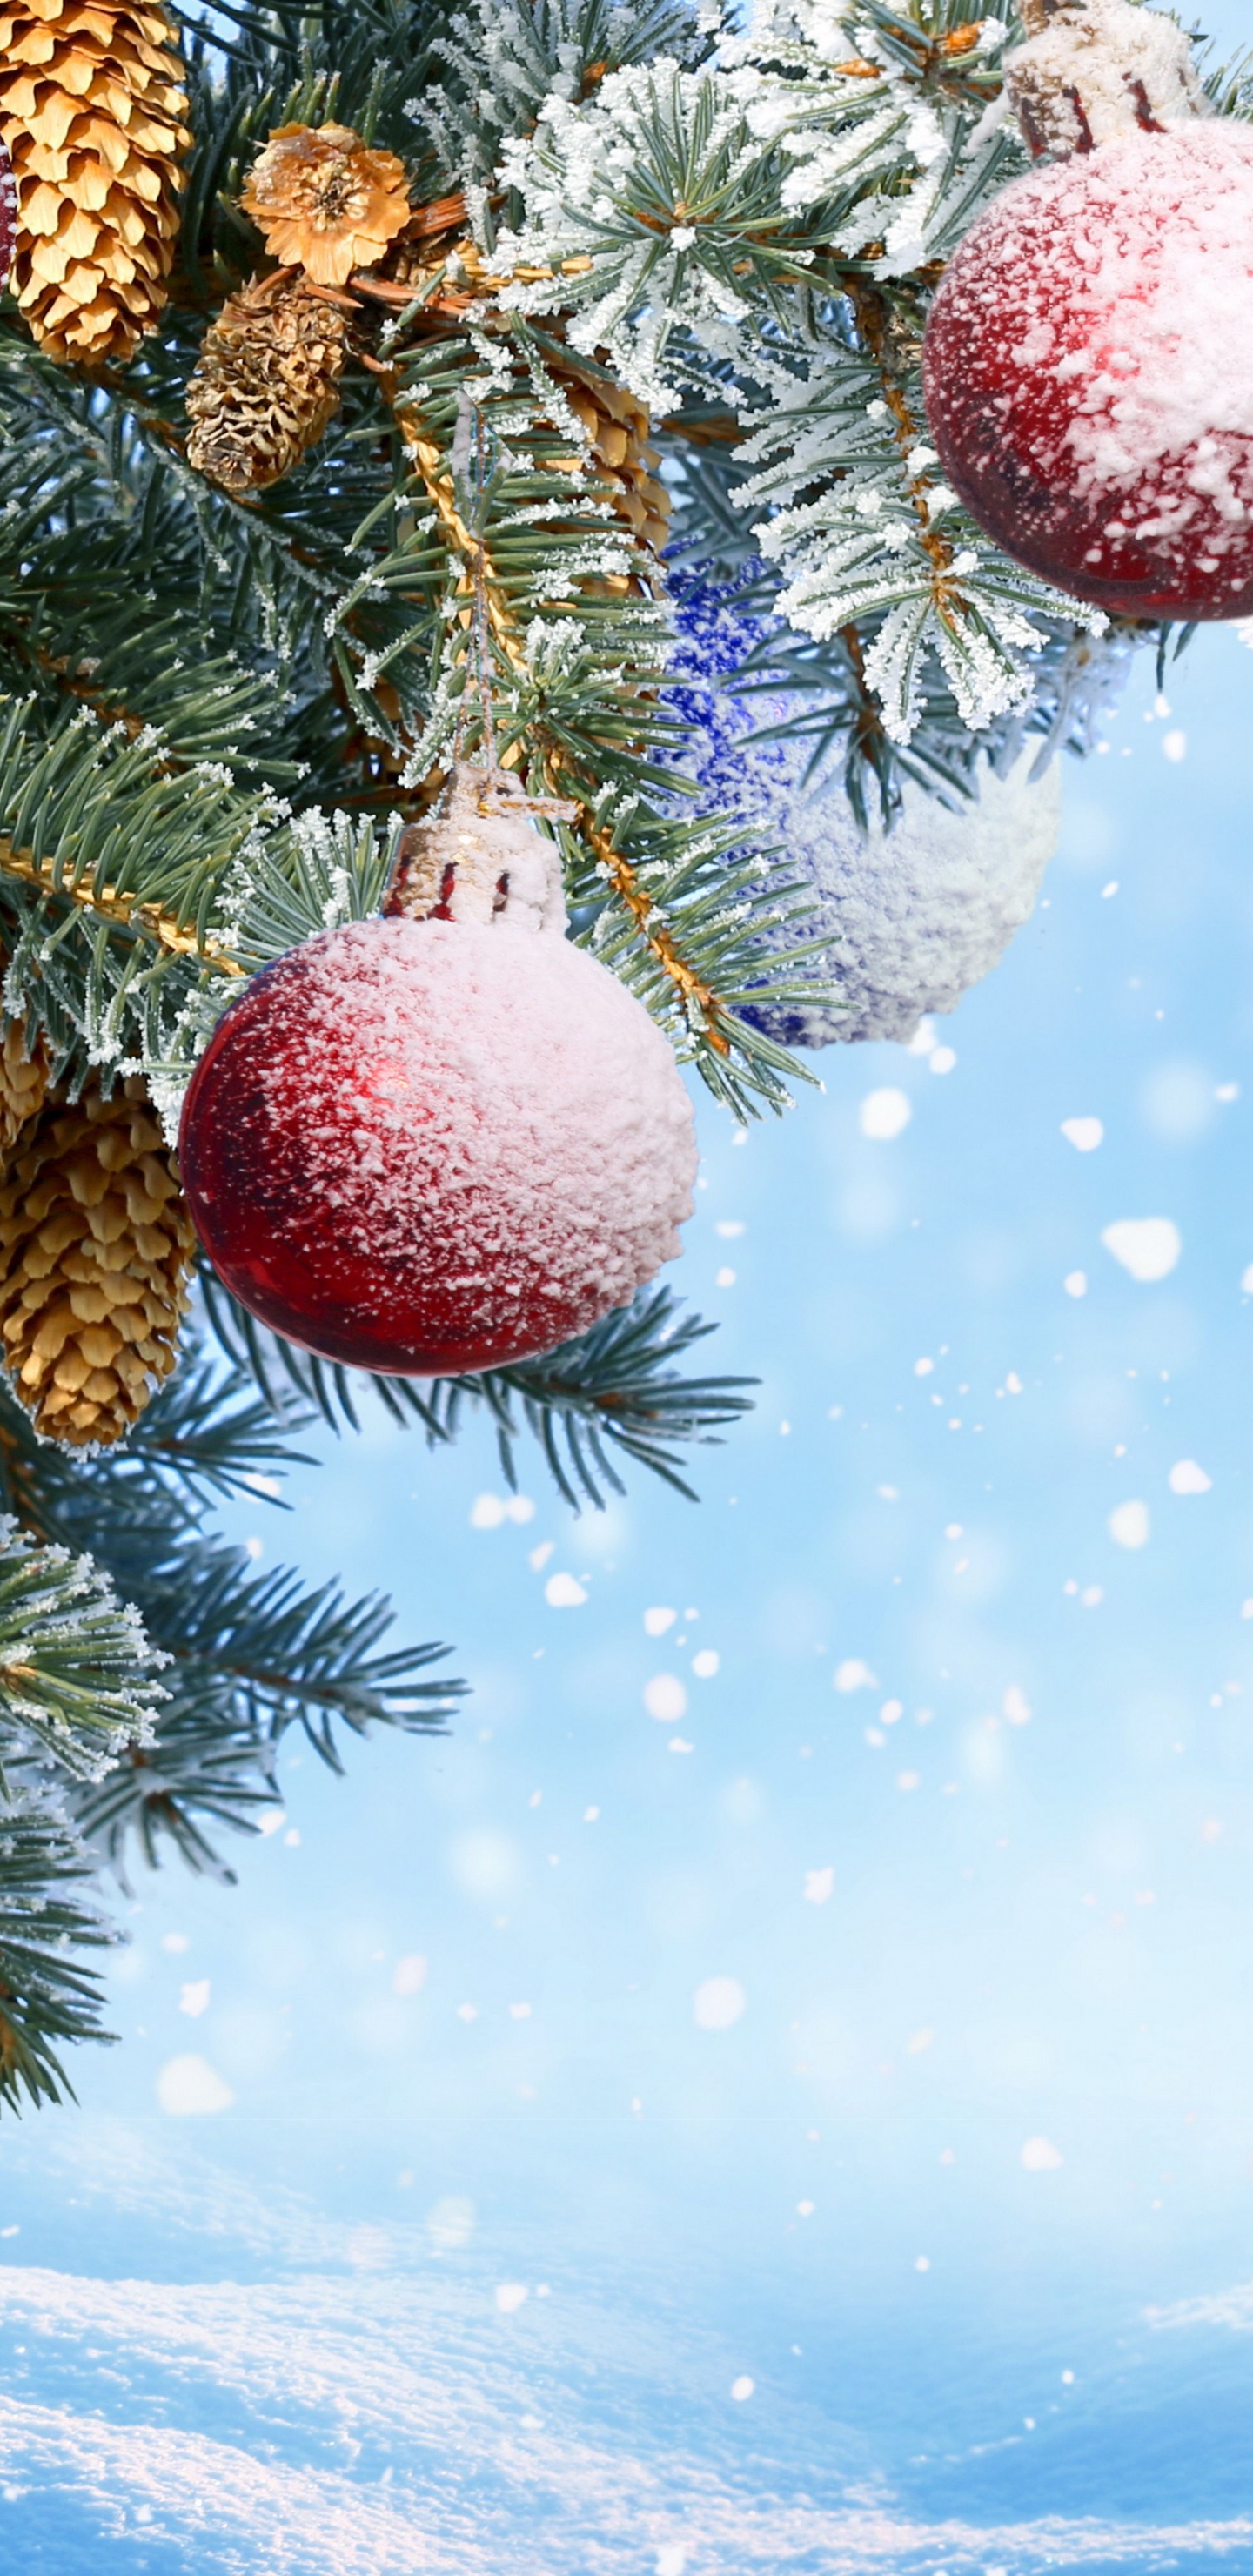 Neujahr, Weihnachten, Christmas Ornament, Baum, Fir. Wallpaper in 1440x2960 Resolution